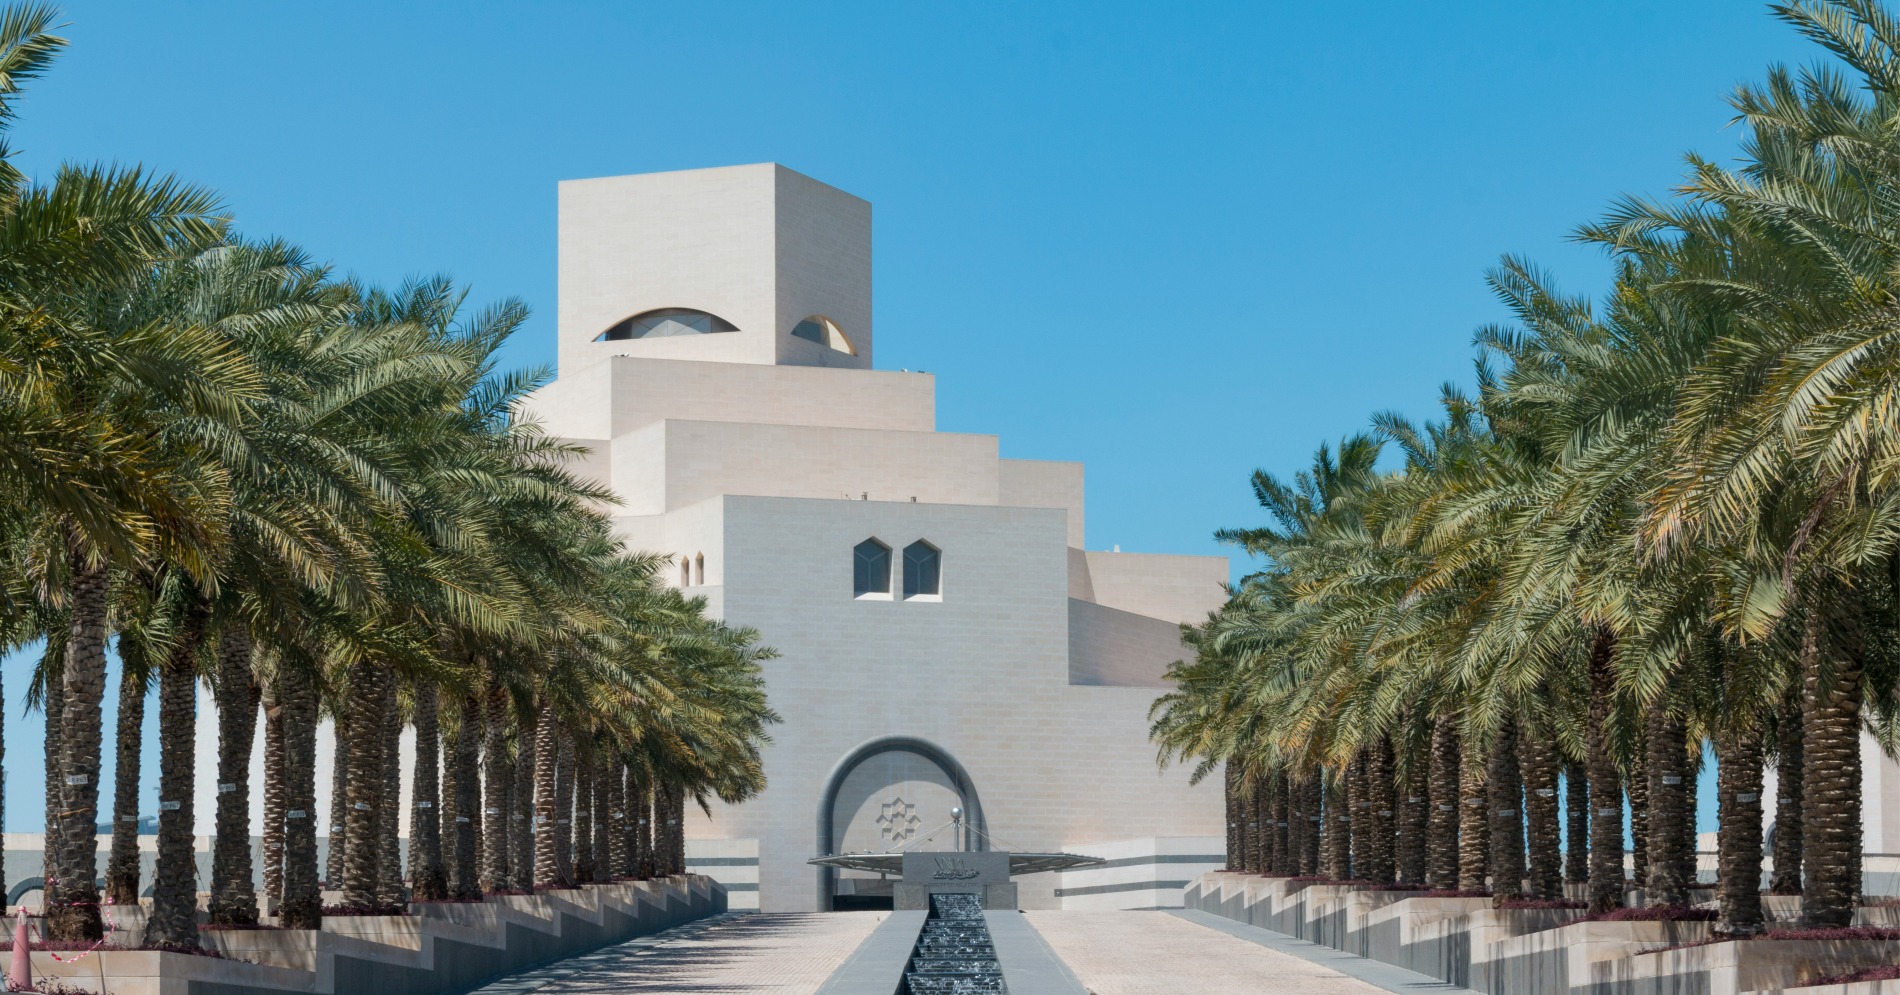 Museum of Islamic Art Doha Qatar (Sumber gambar: Unsplash/John Simmons)